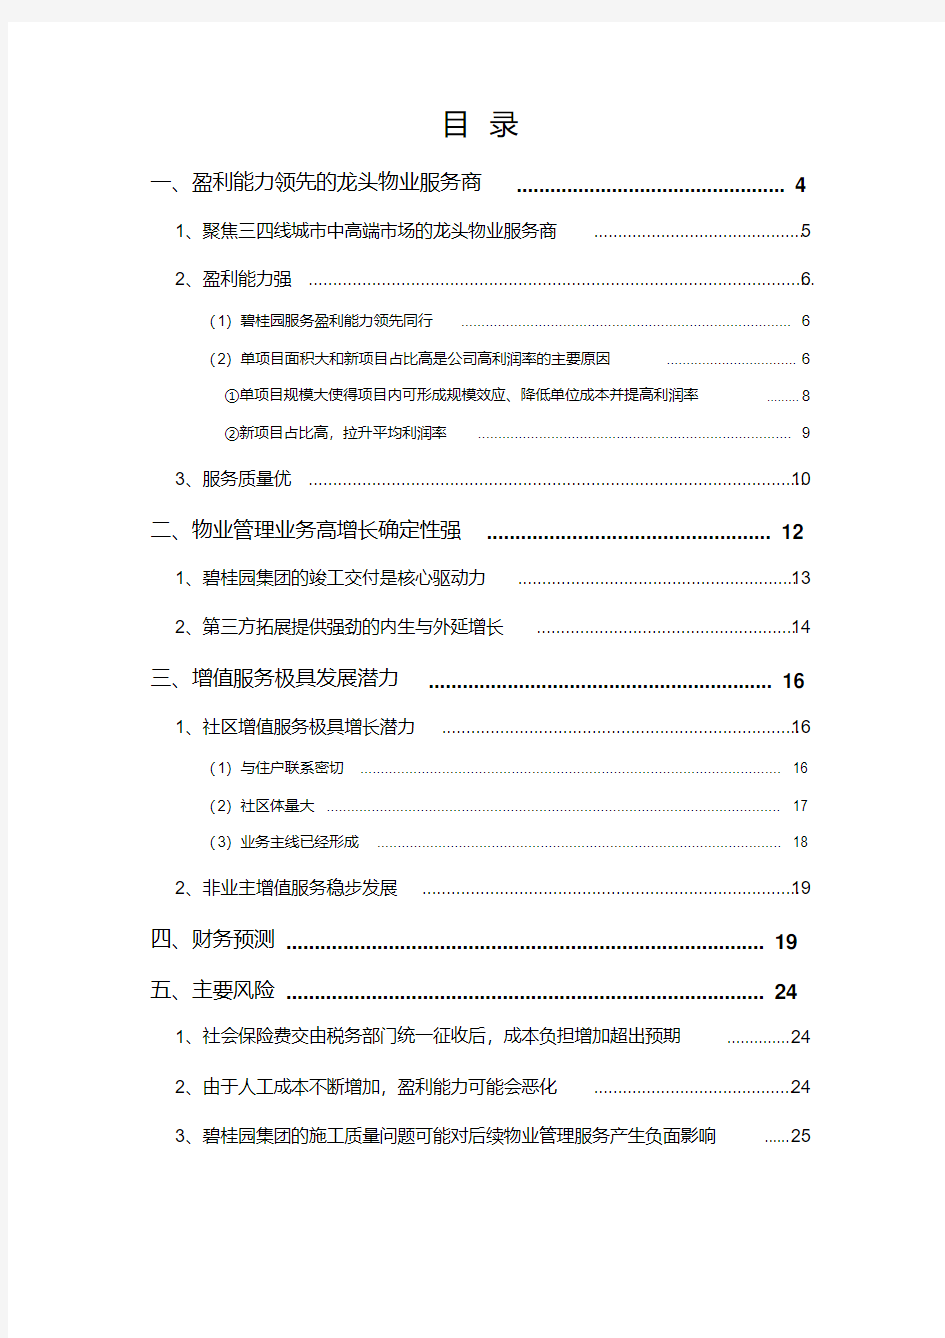 2018年物业管理行业碧桂园服务分析报告